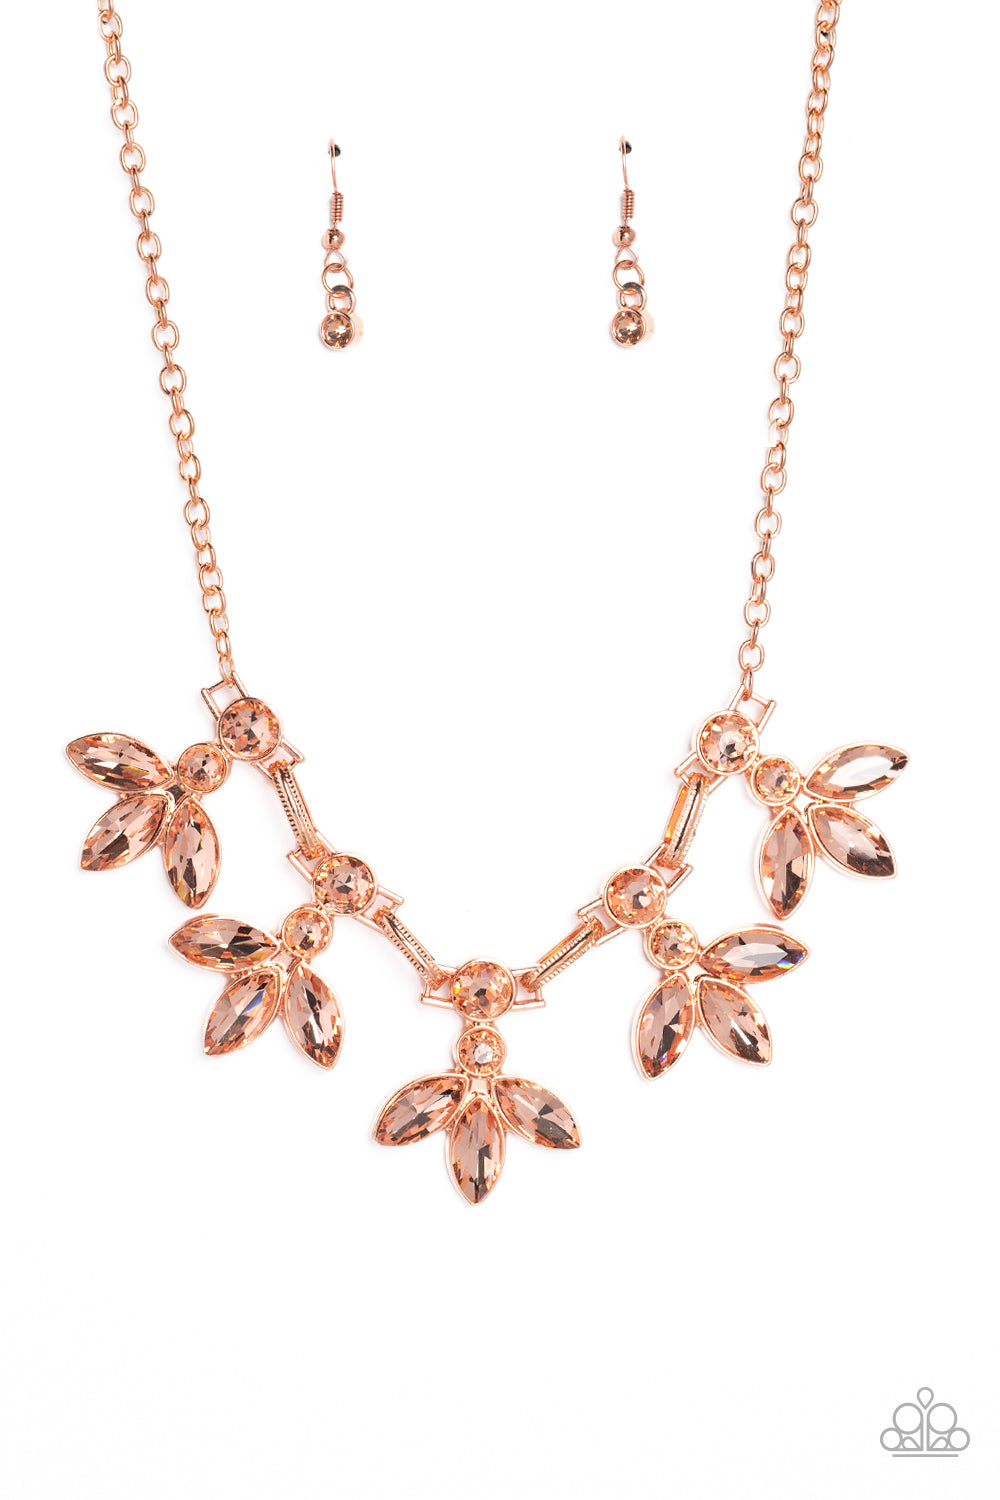 Dauntlessly Debonair - copper - Paparazzi necklace